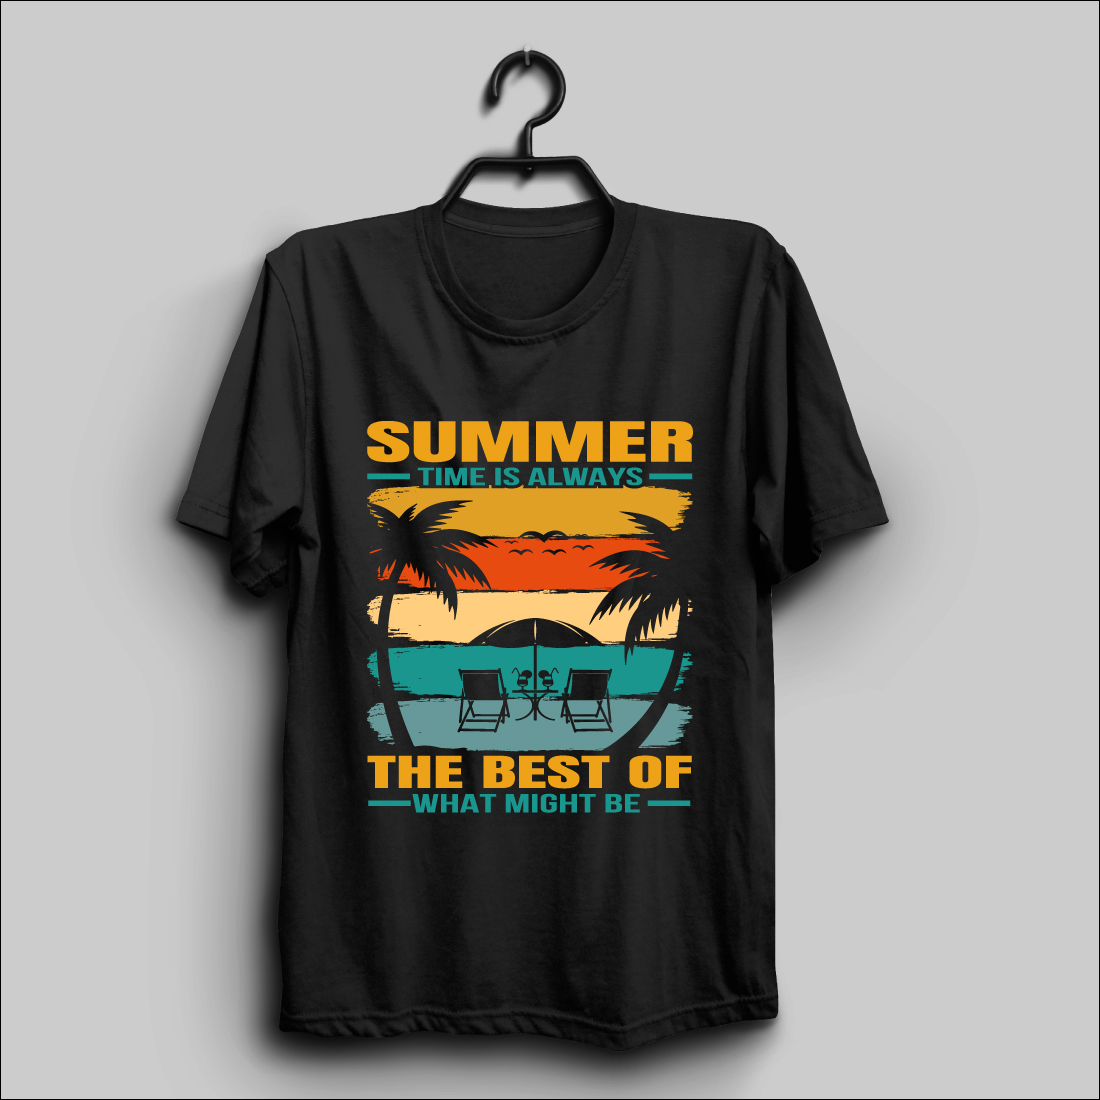 summer t shirt design 1 954